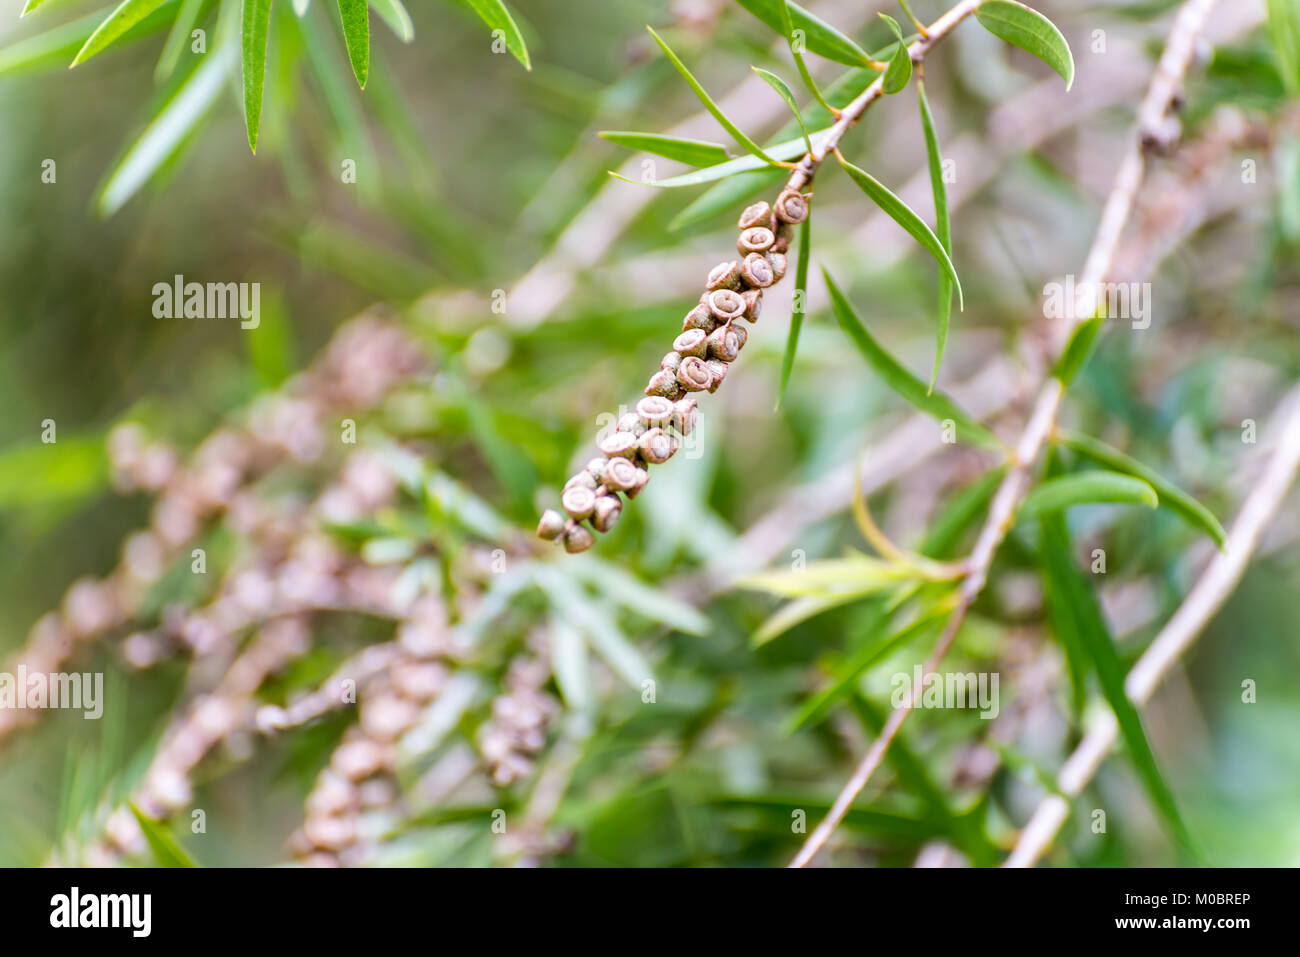 Seeds of the weeping bottlebrush or creek bottlebrush tree Stock Photo